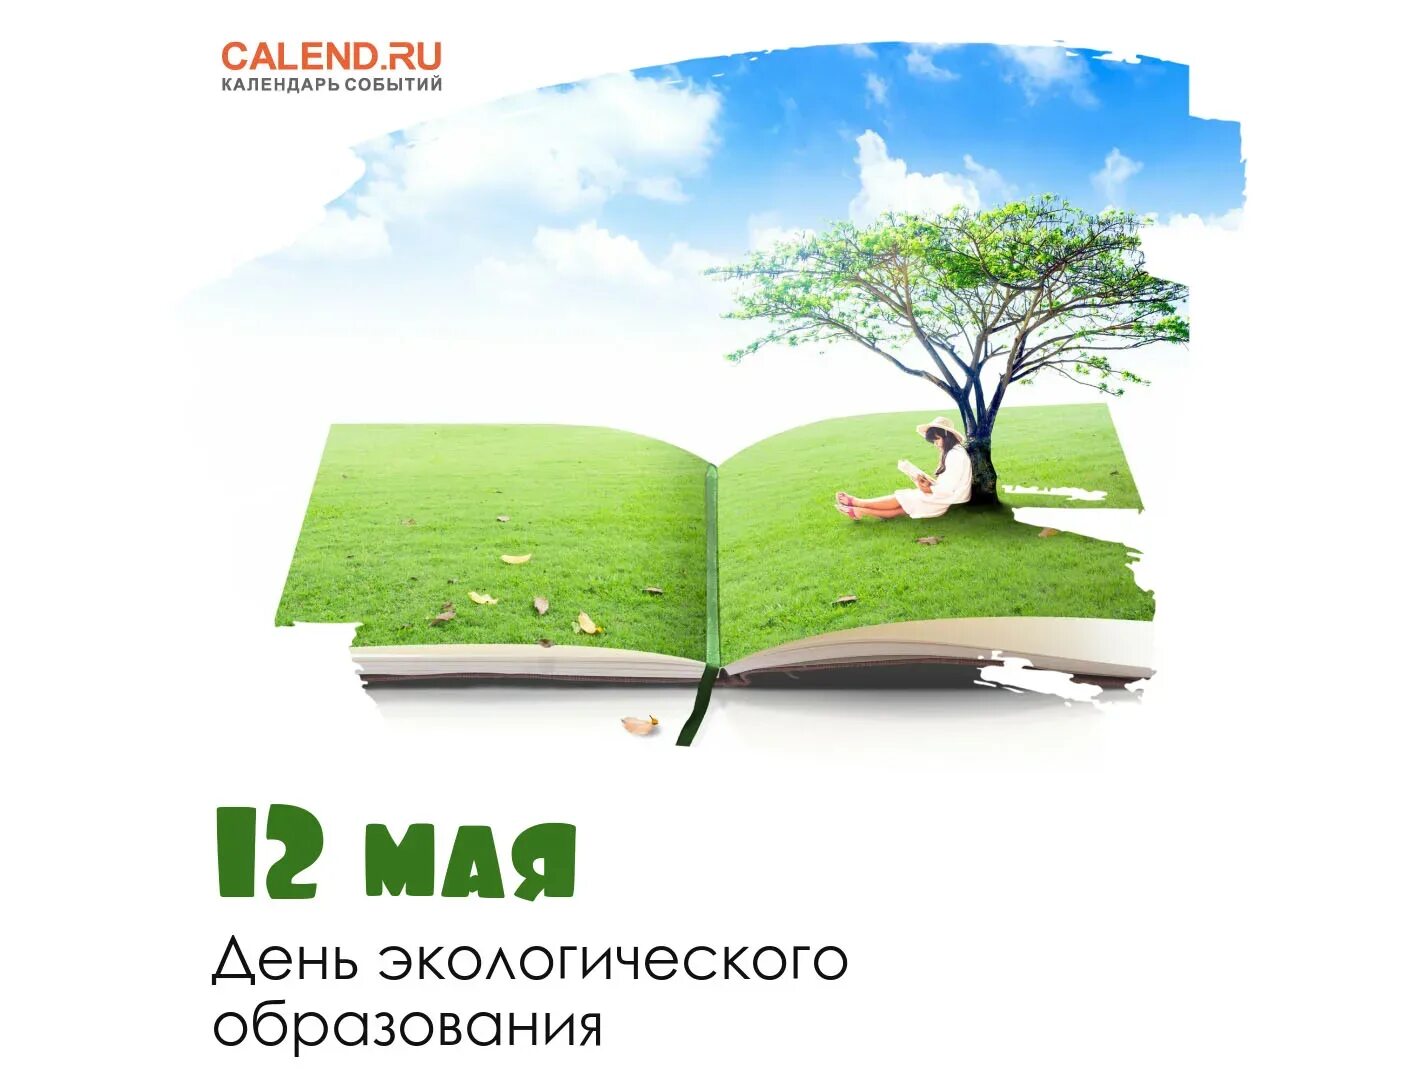 День экологического образования. Праздники 12 мая день экологического образования. Плакаты ко Дню экологического образования 12 мая. День экологического образования картинки.